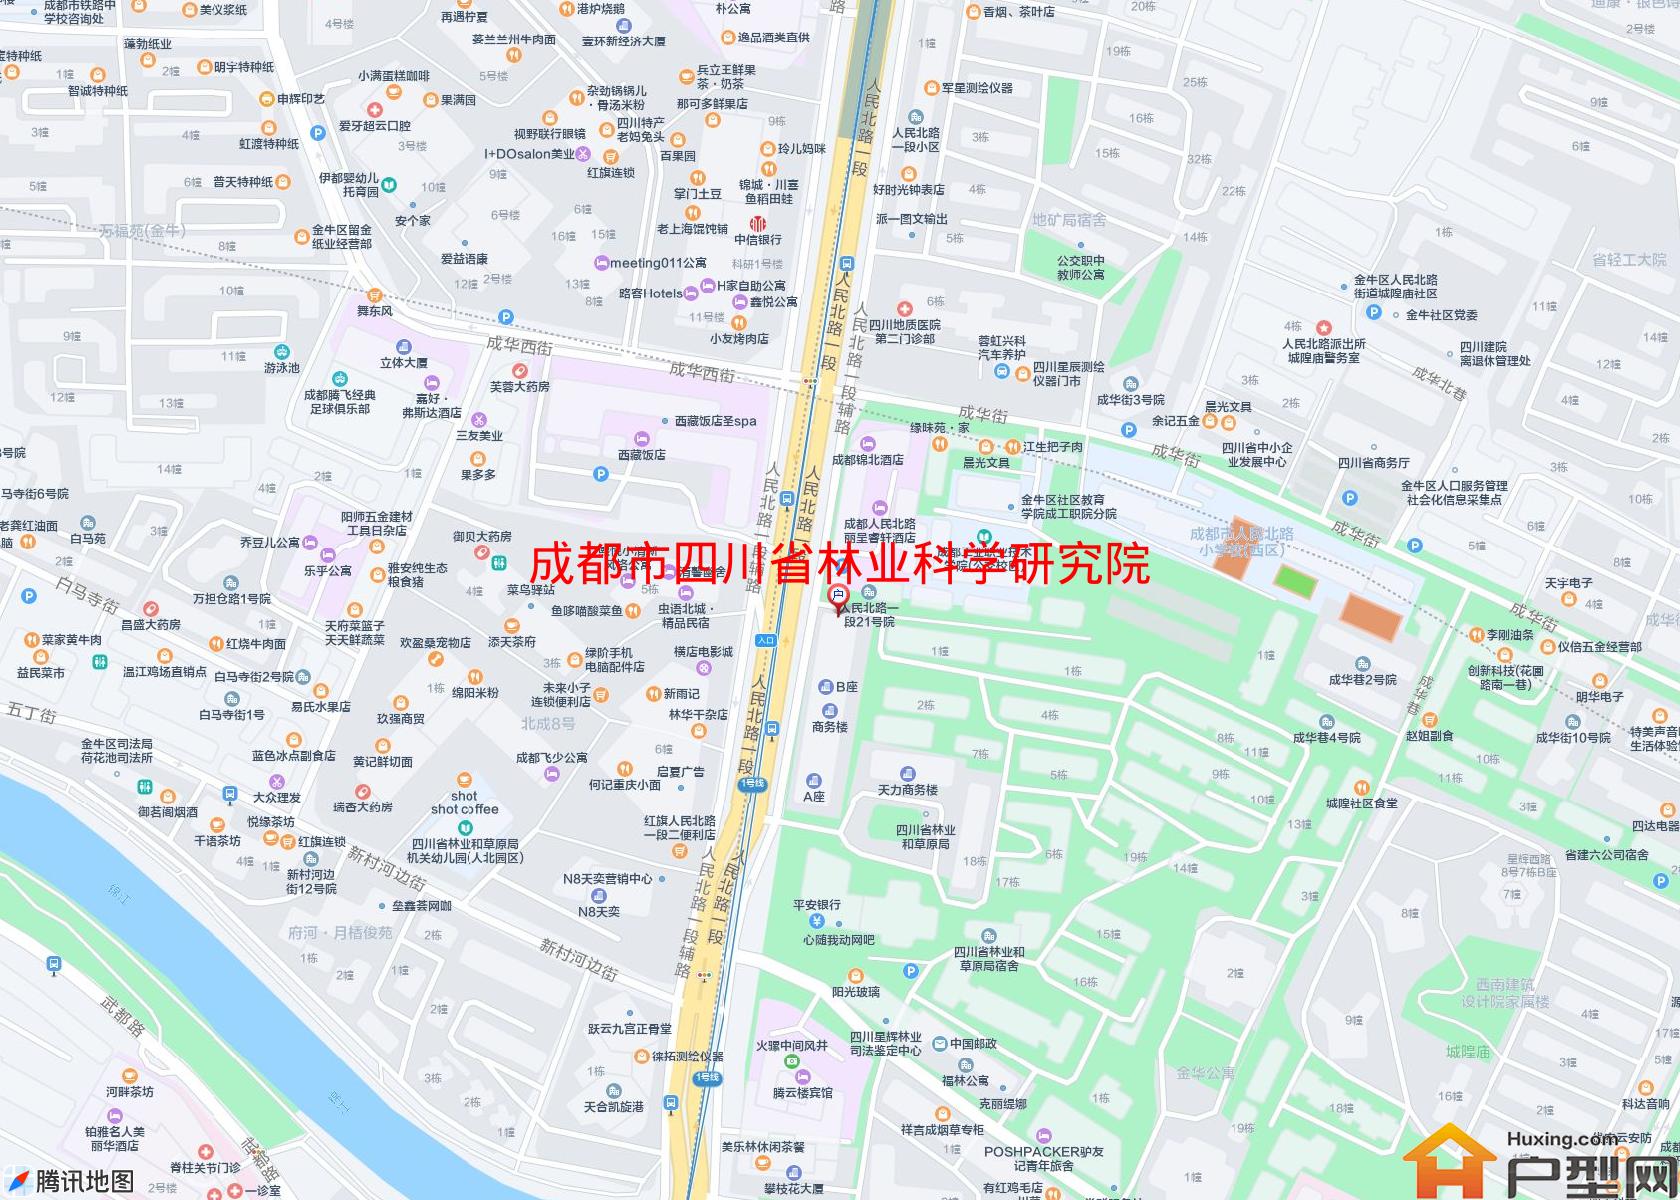 四川省林业科学研究院宿舍小区 - 户型网